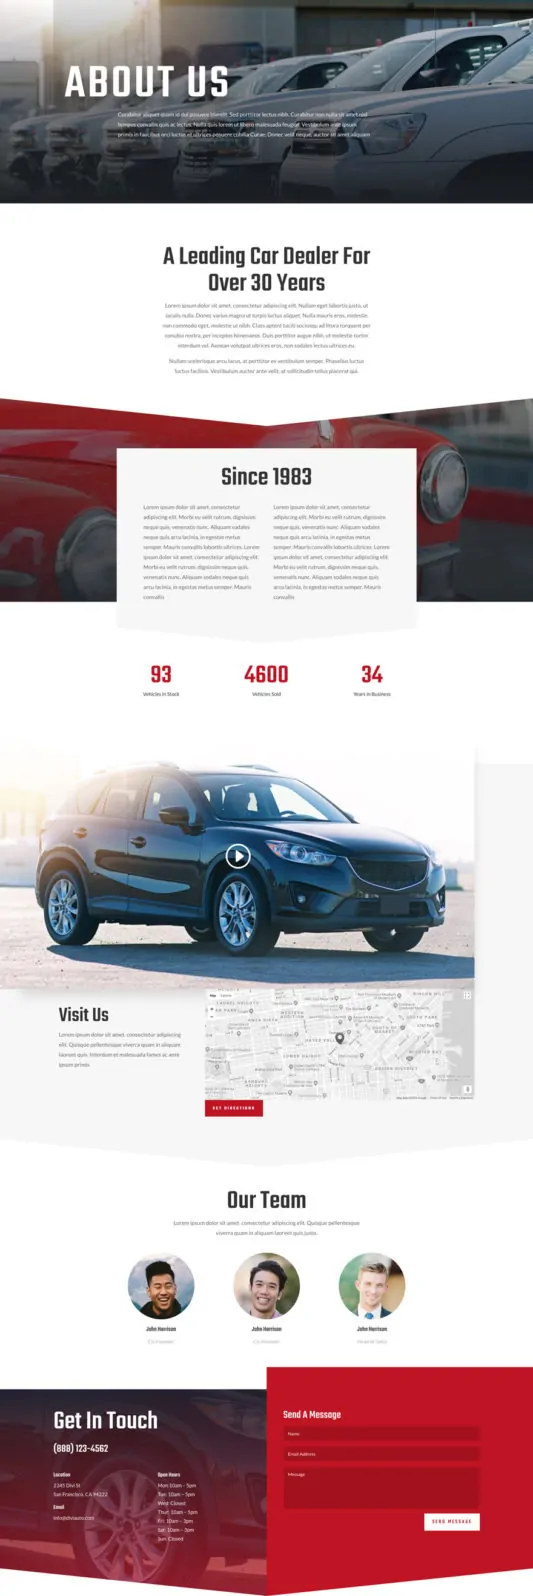 Car Dealer Web Design 1